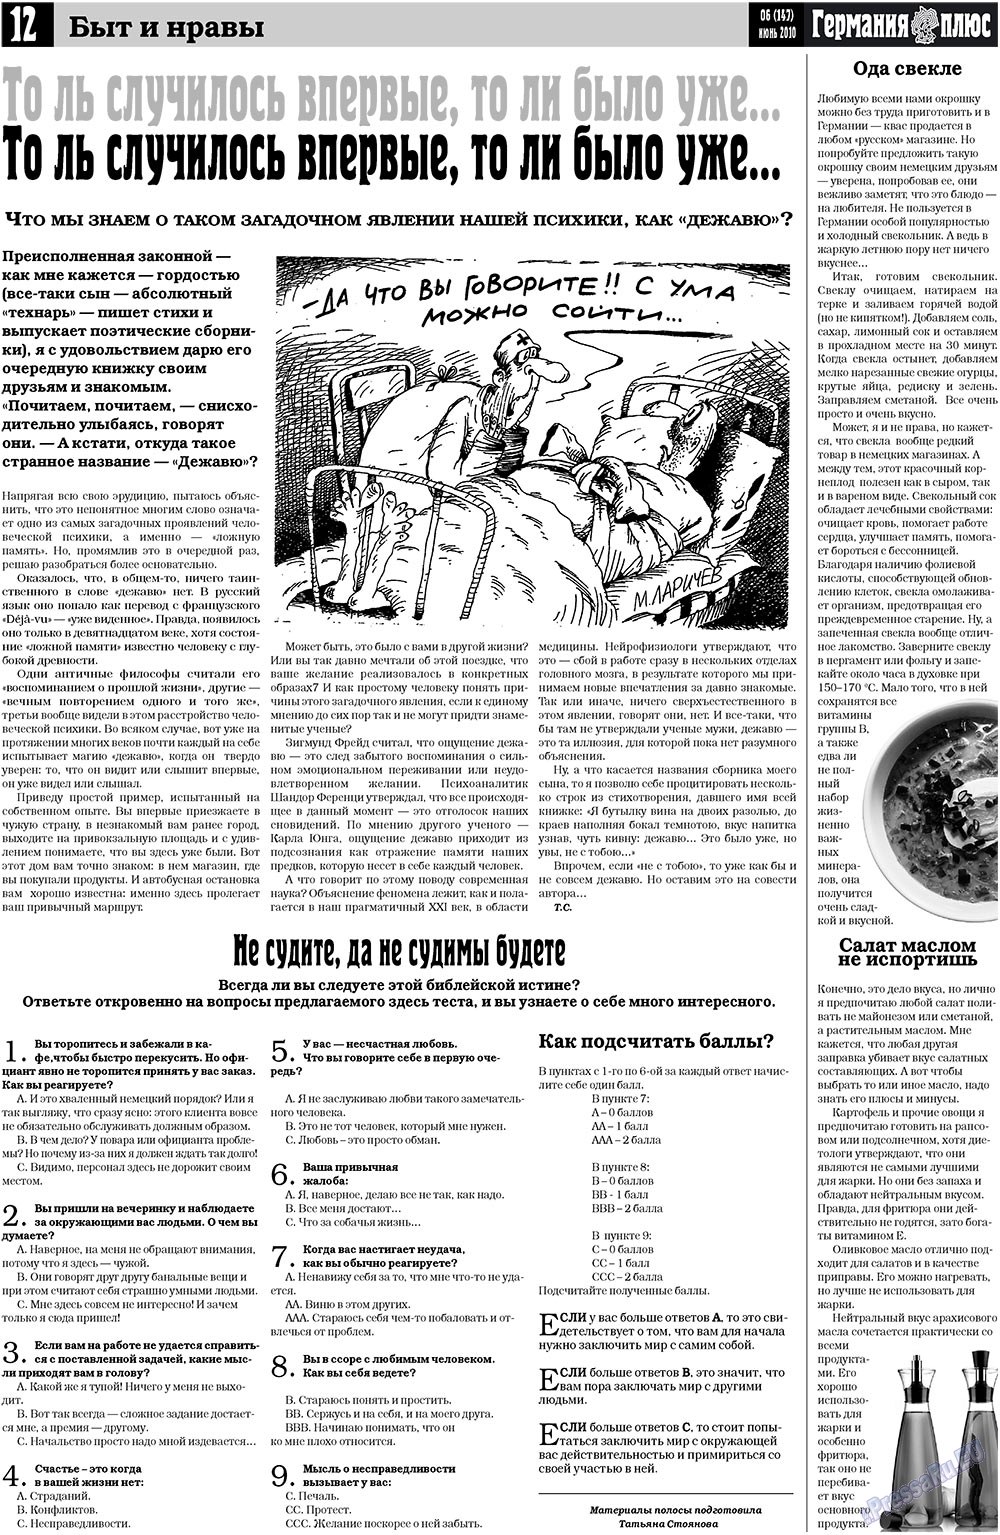 Германия плюс (газета). 2010 год, номер 6, стр. 12